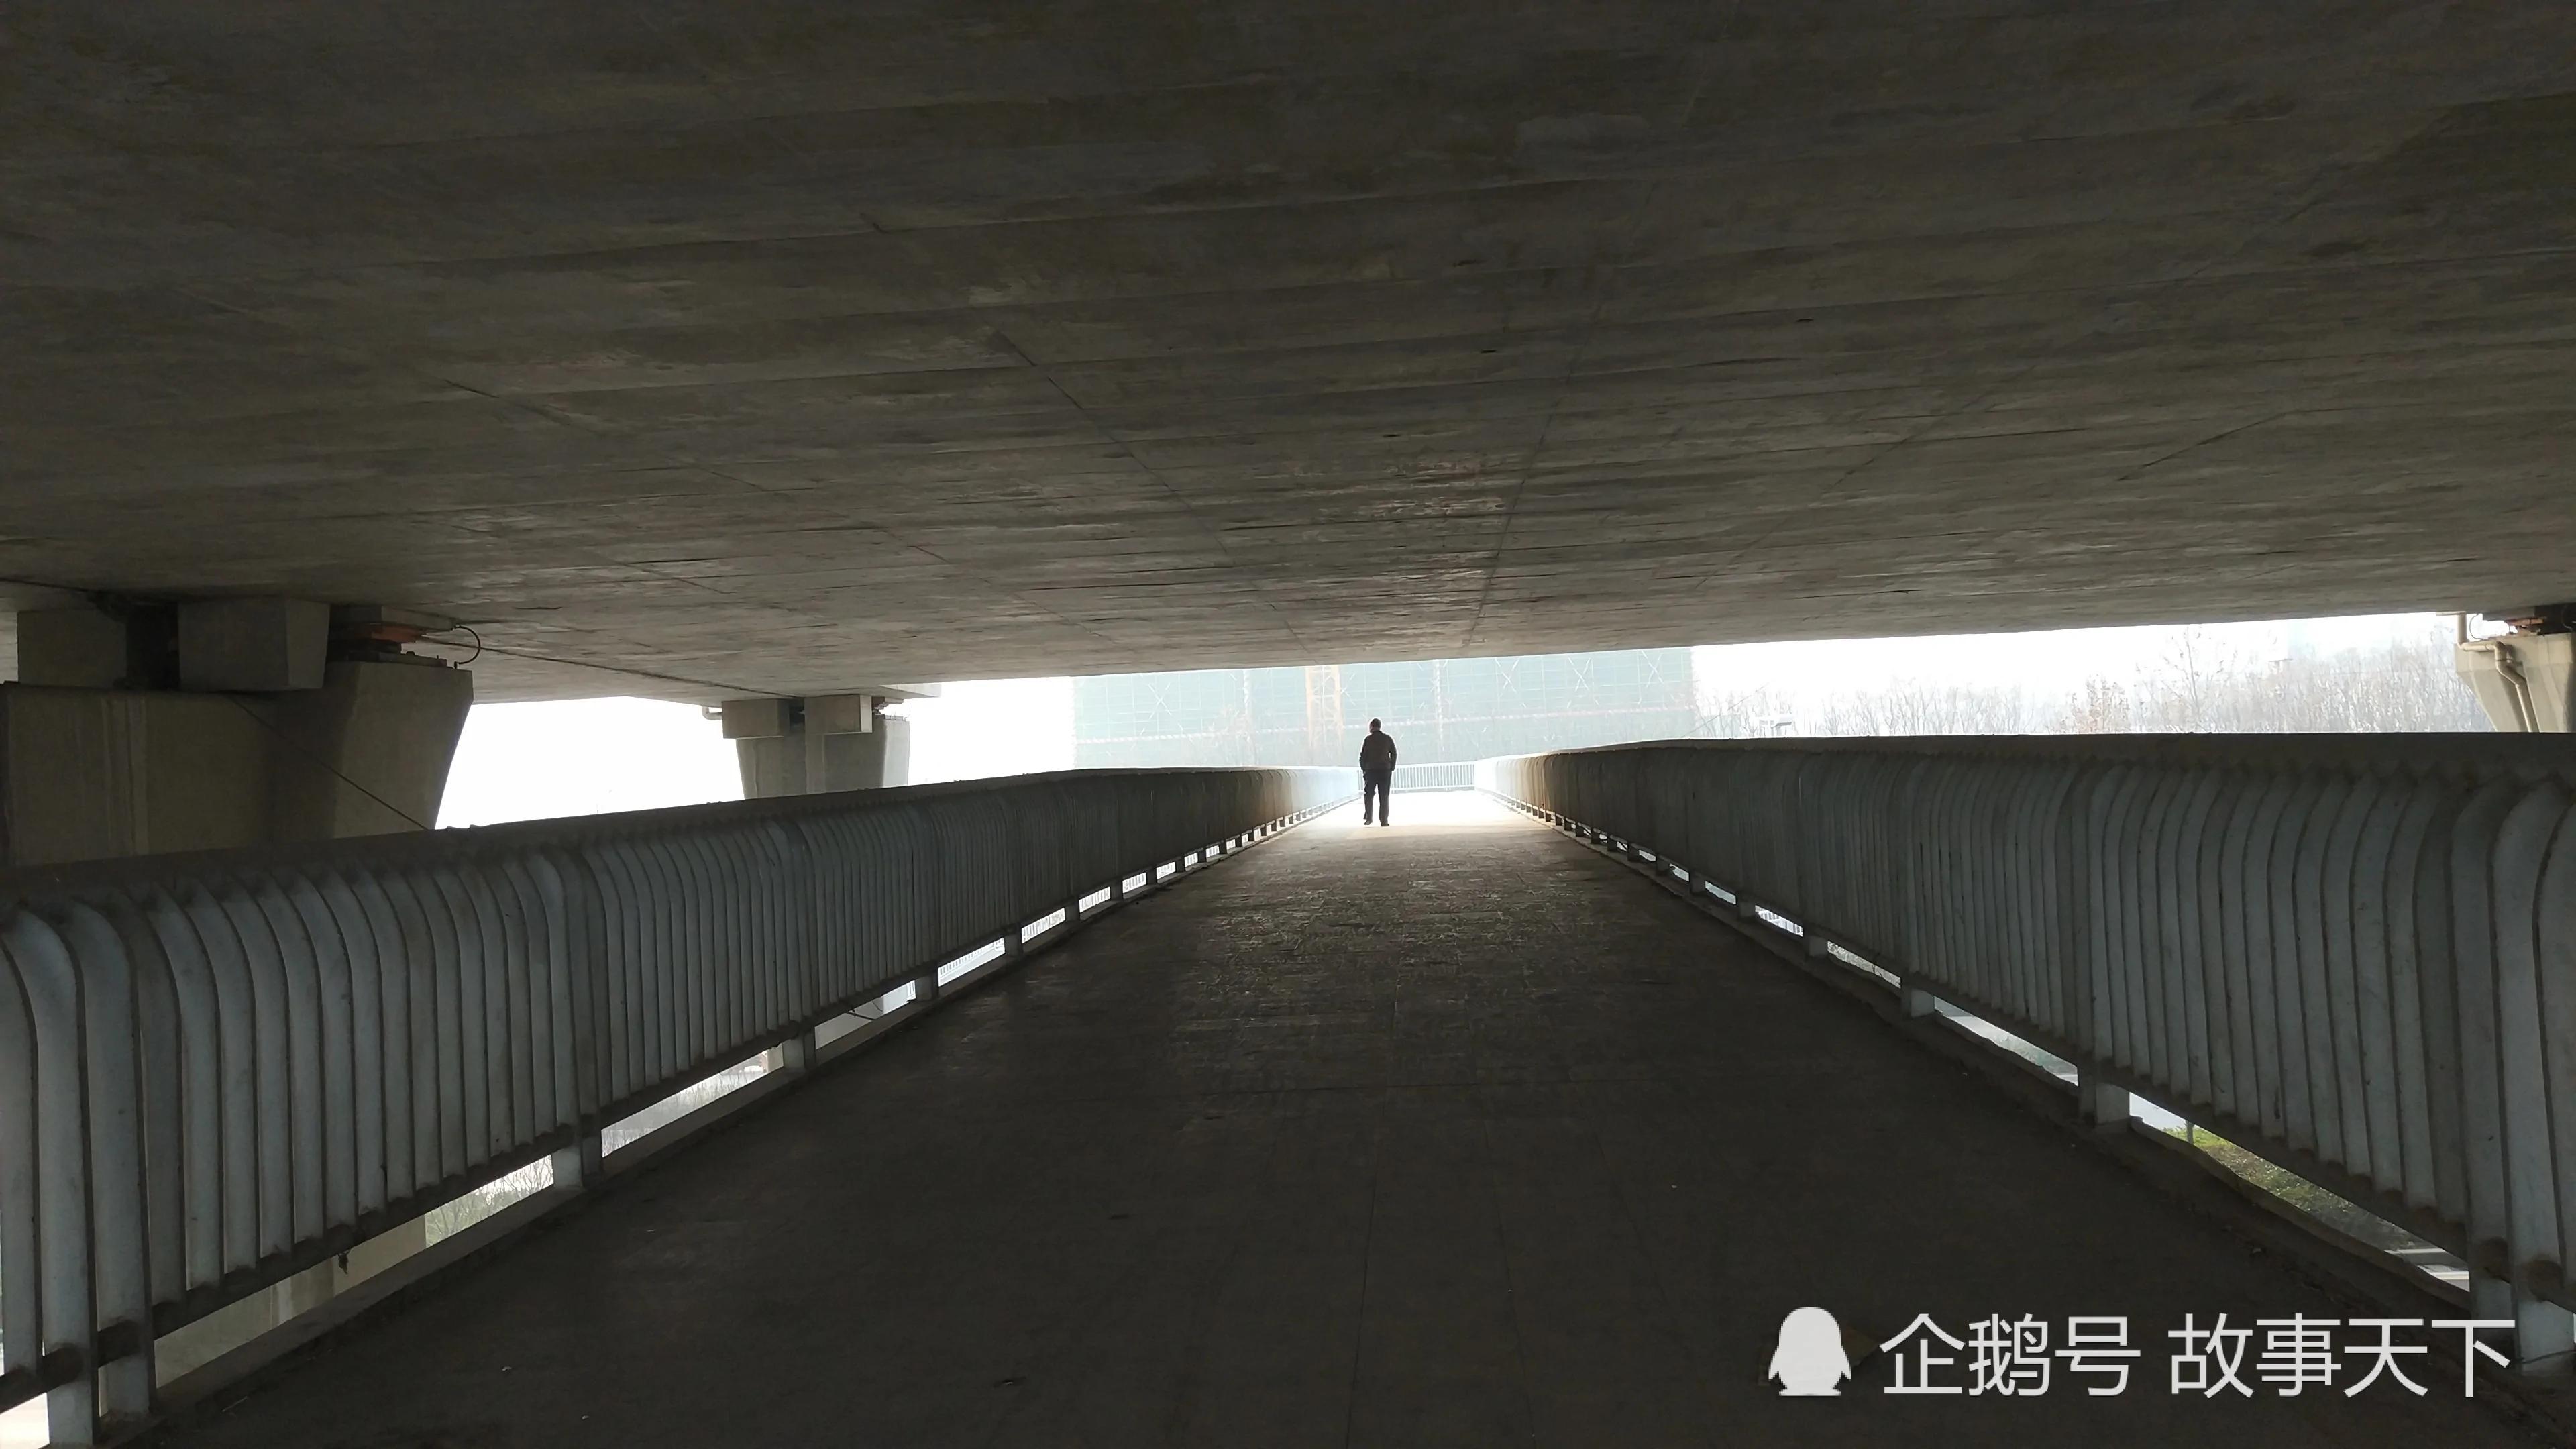 鄭州有座「憋屈」天橋 個高的人得小心了